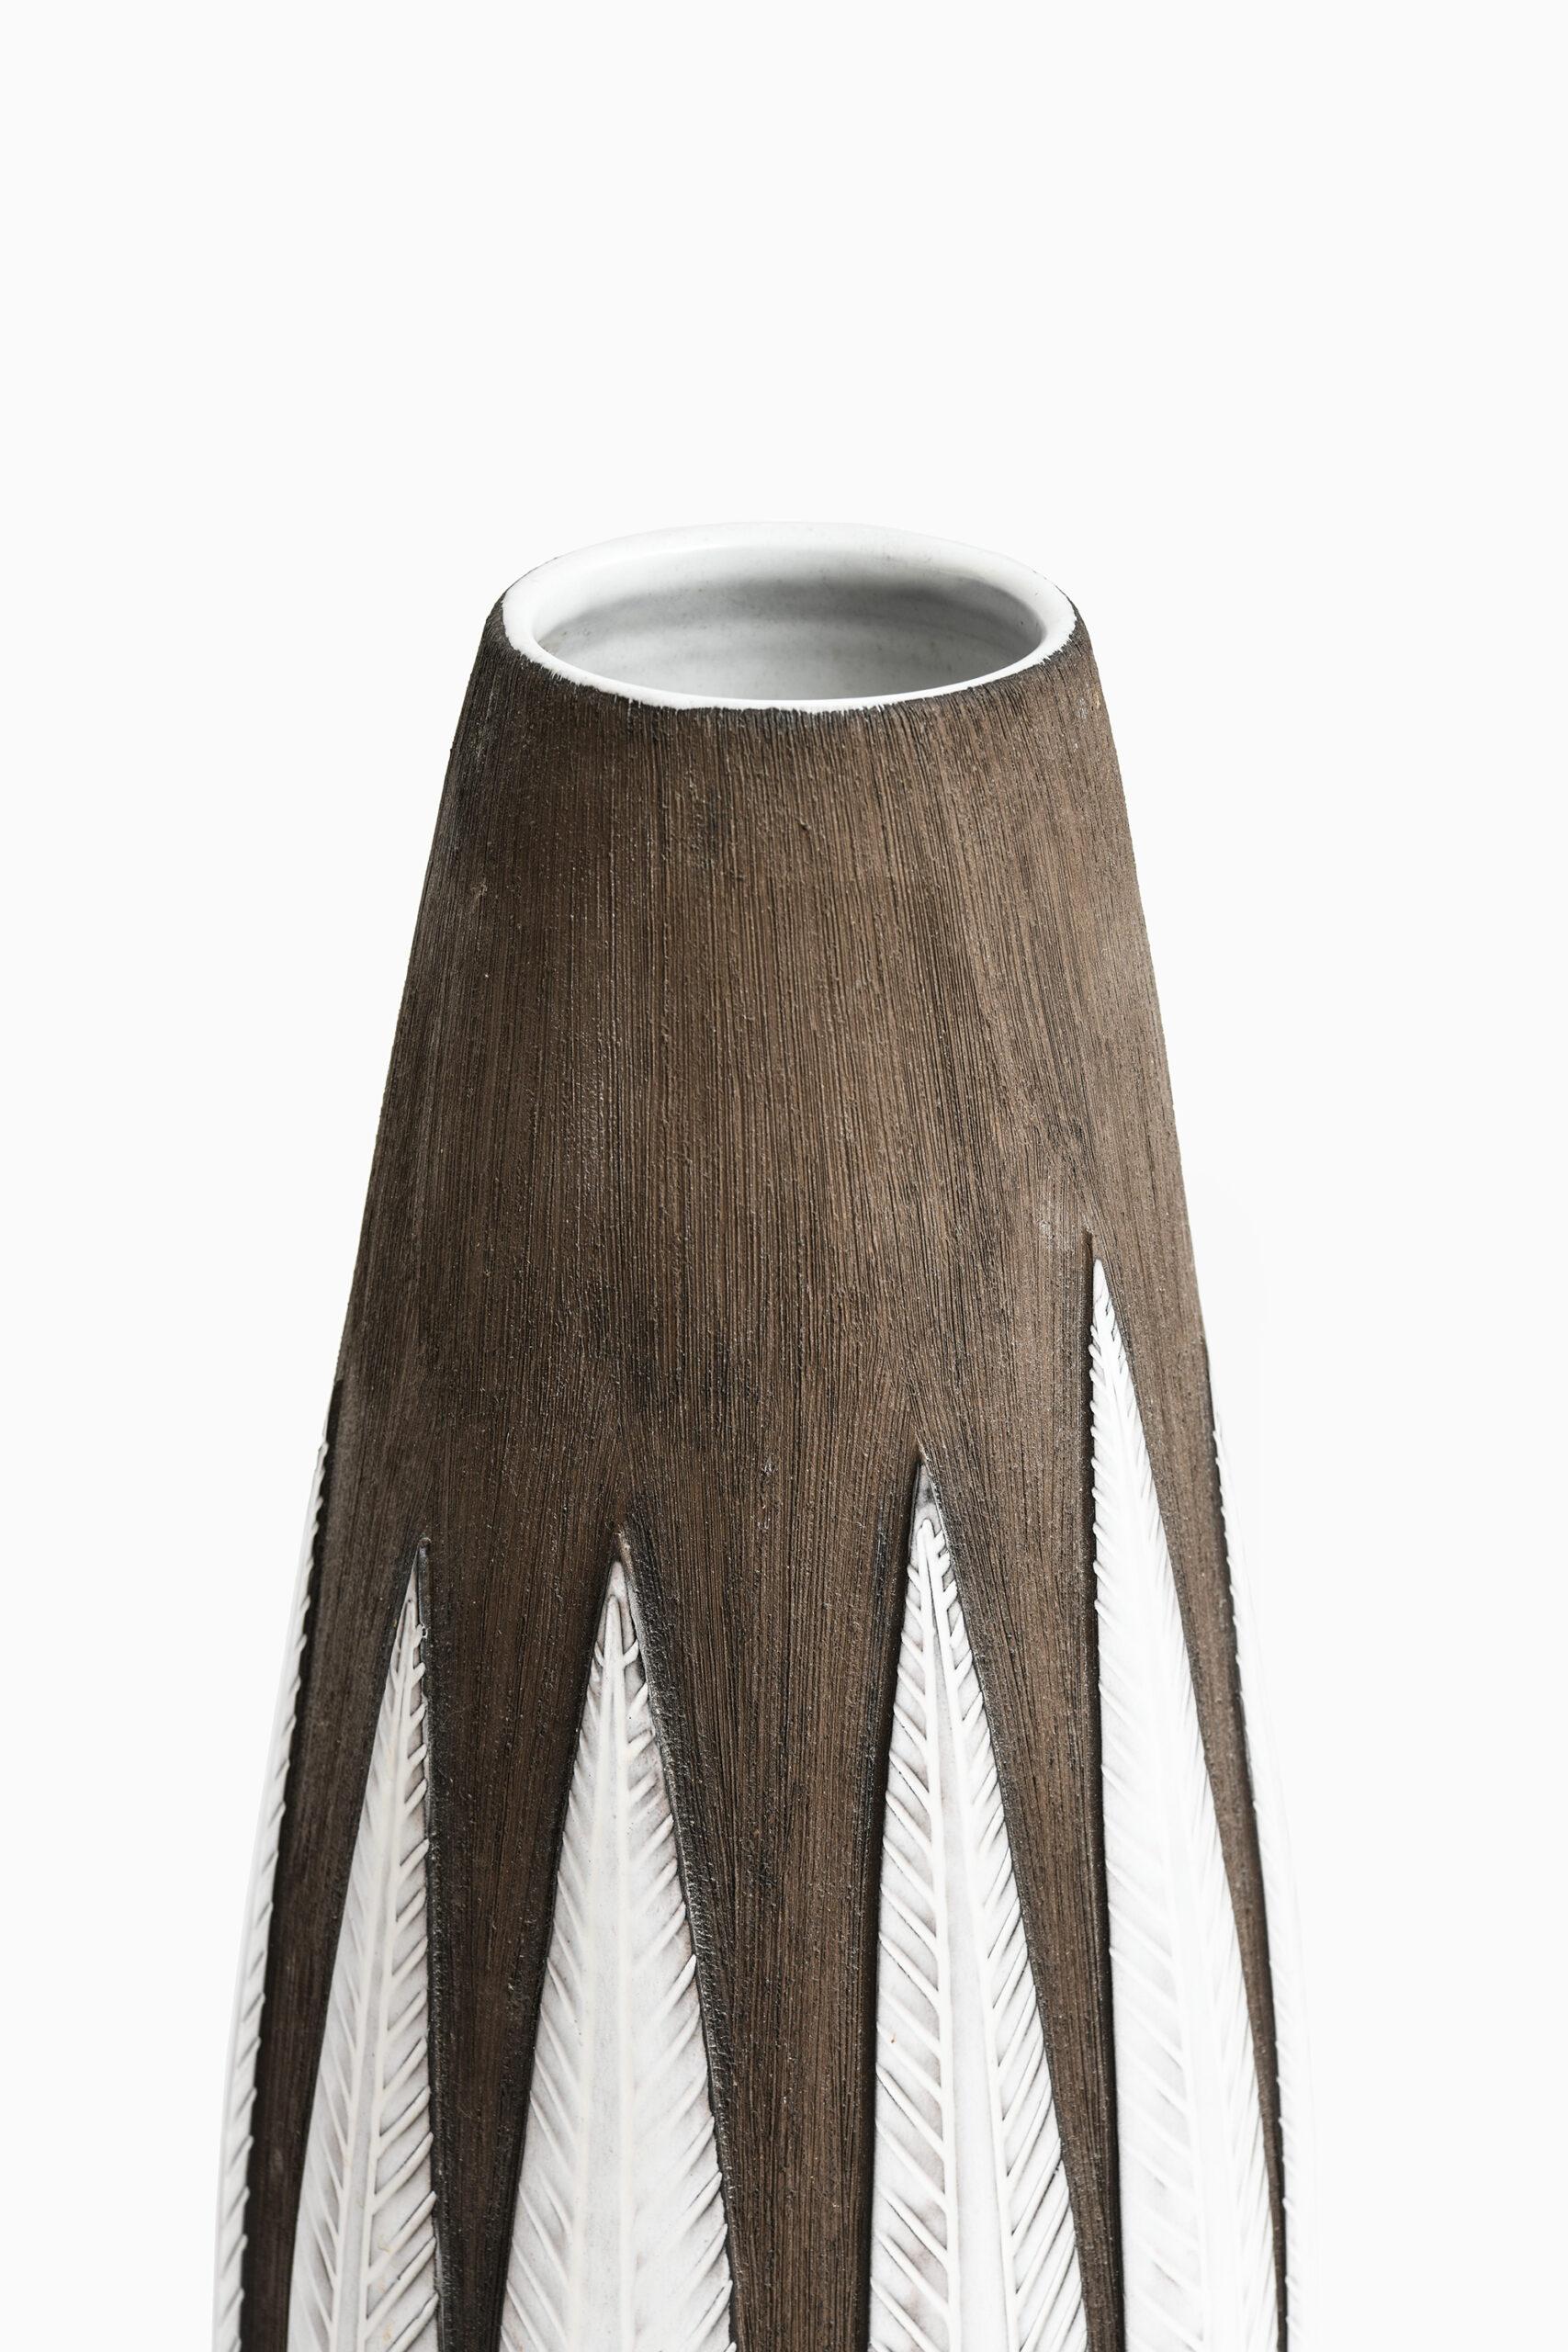 Large ceramic floor vase model Paprika designed by Anna-Lisa Thomson. Produced by Upsala Ekeby in Sweden.